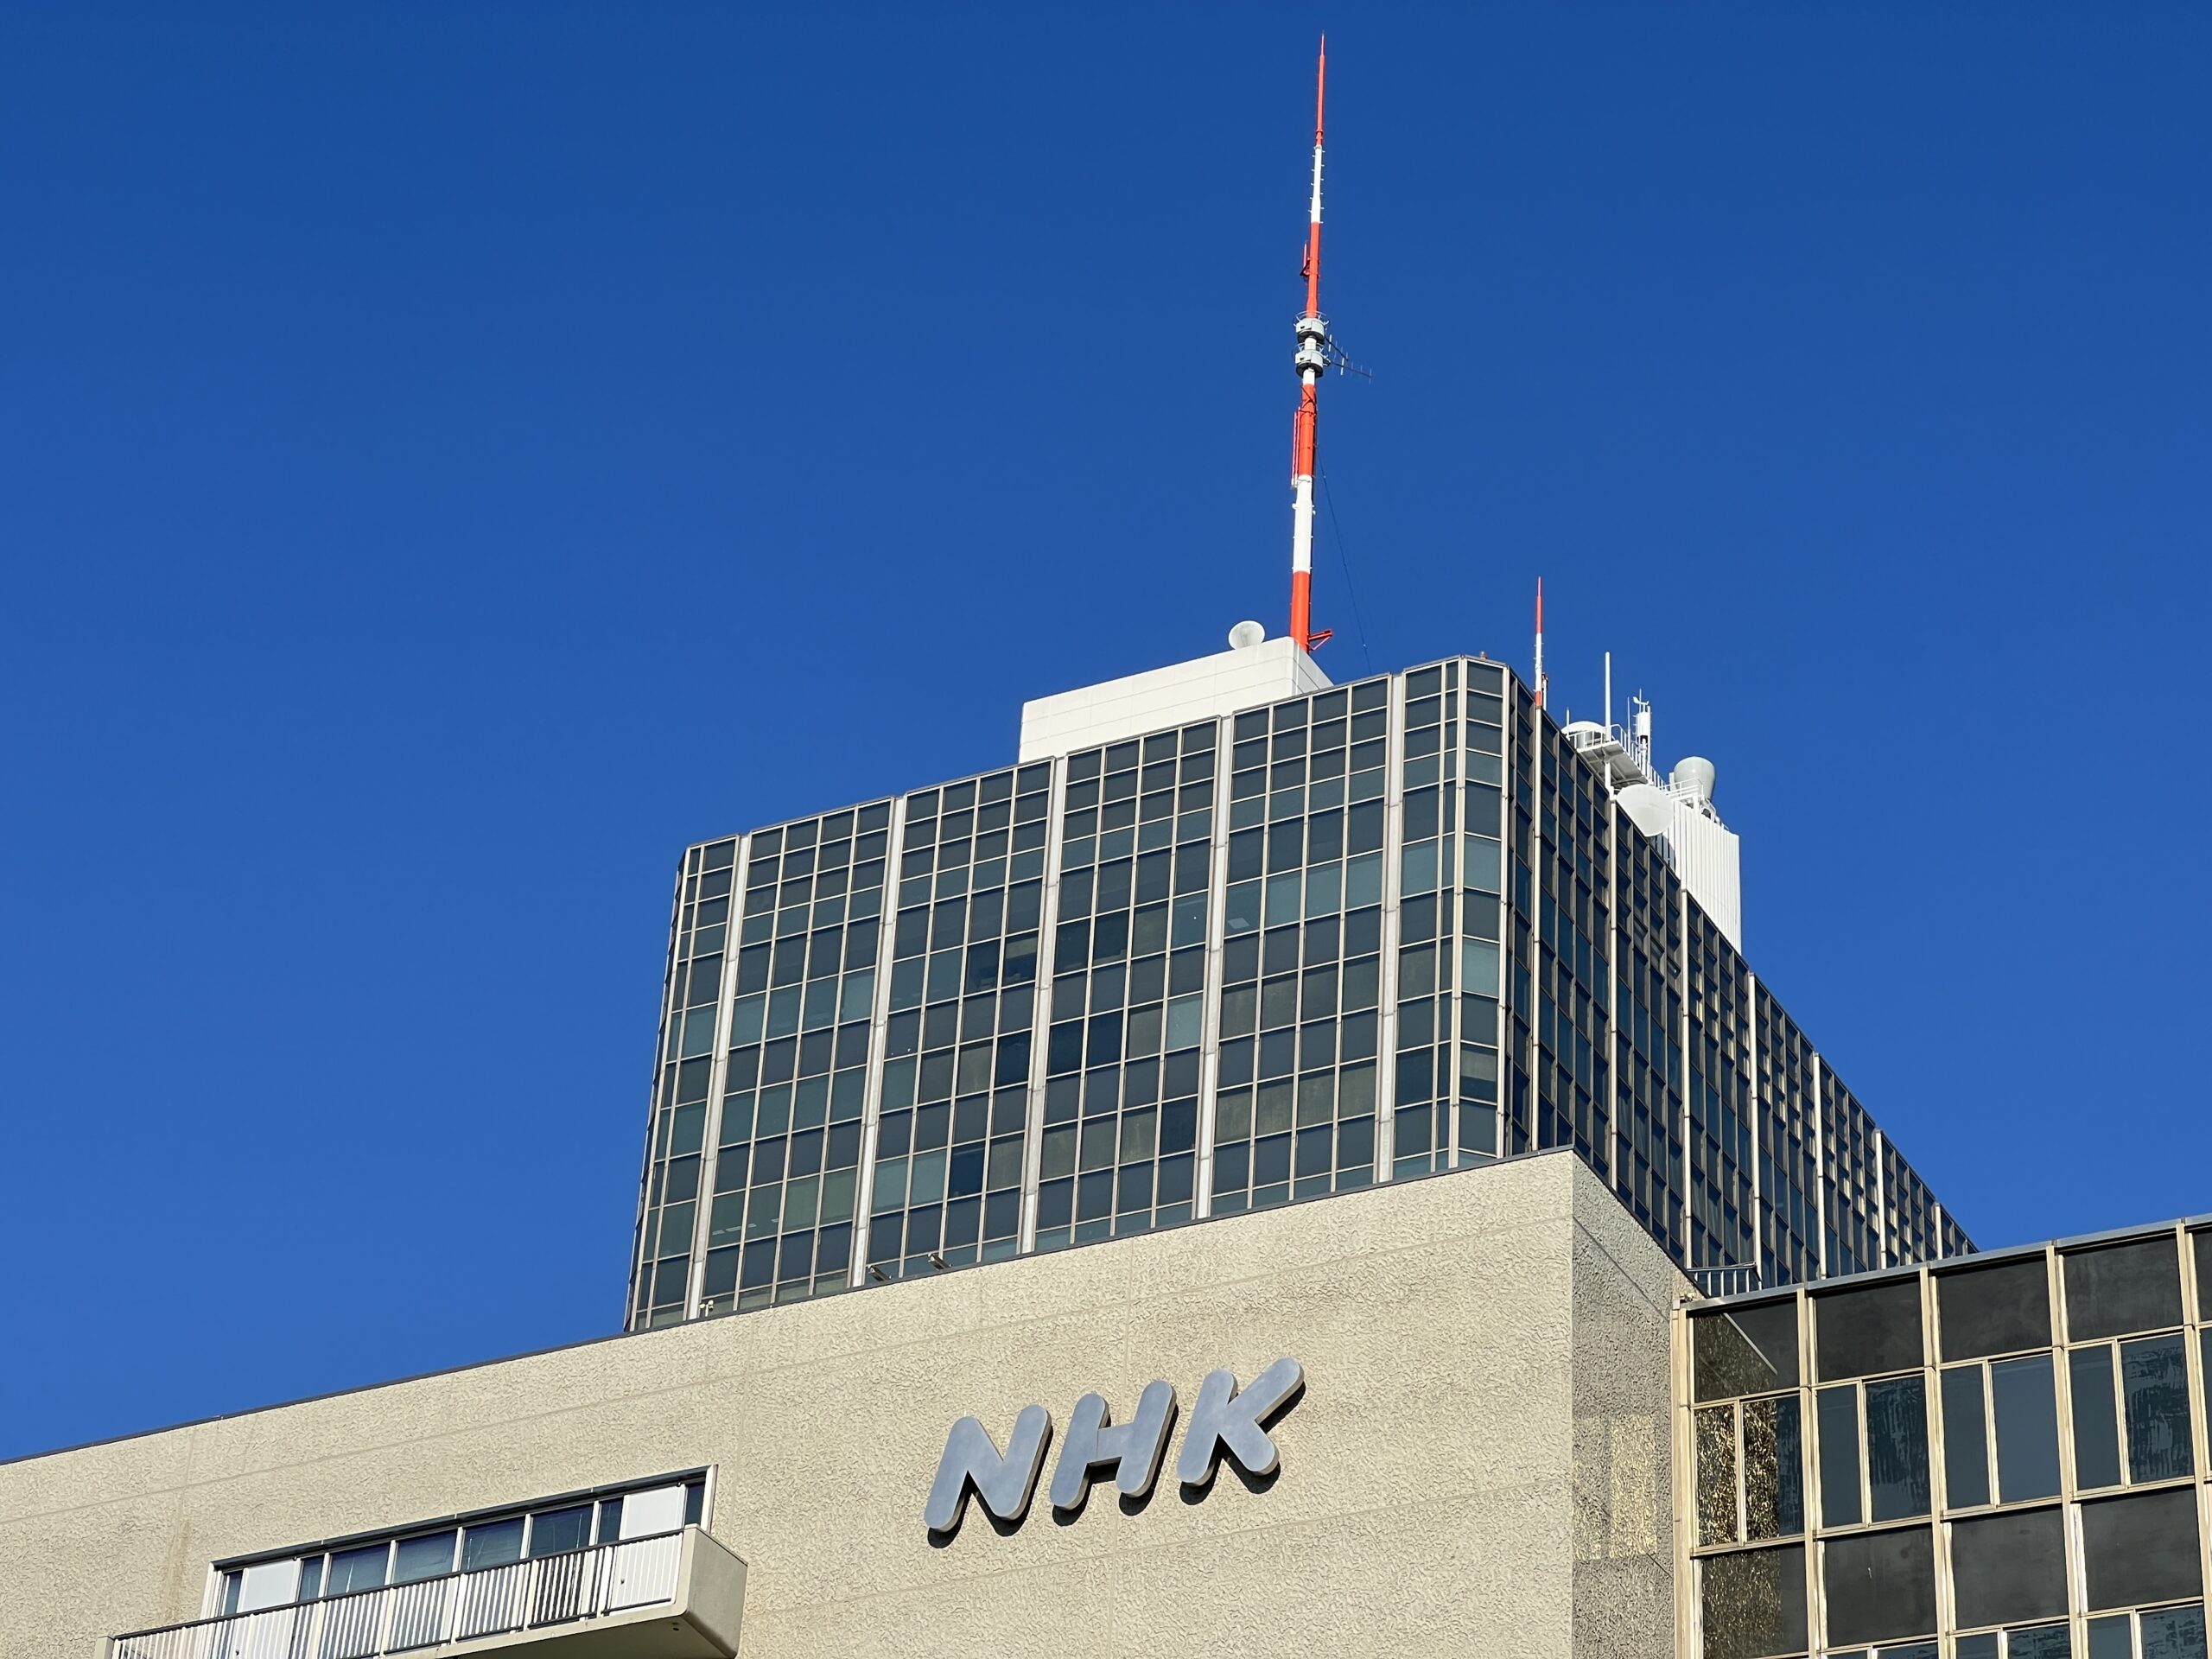 NHKの本社のロゴ写真